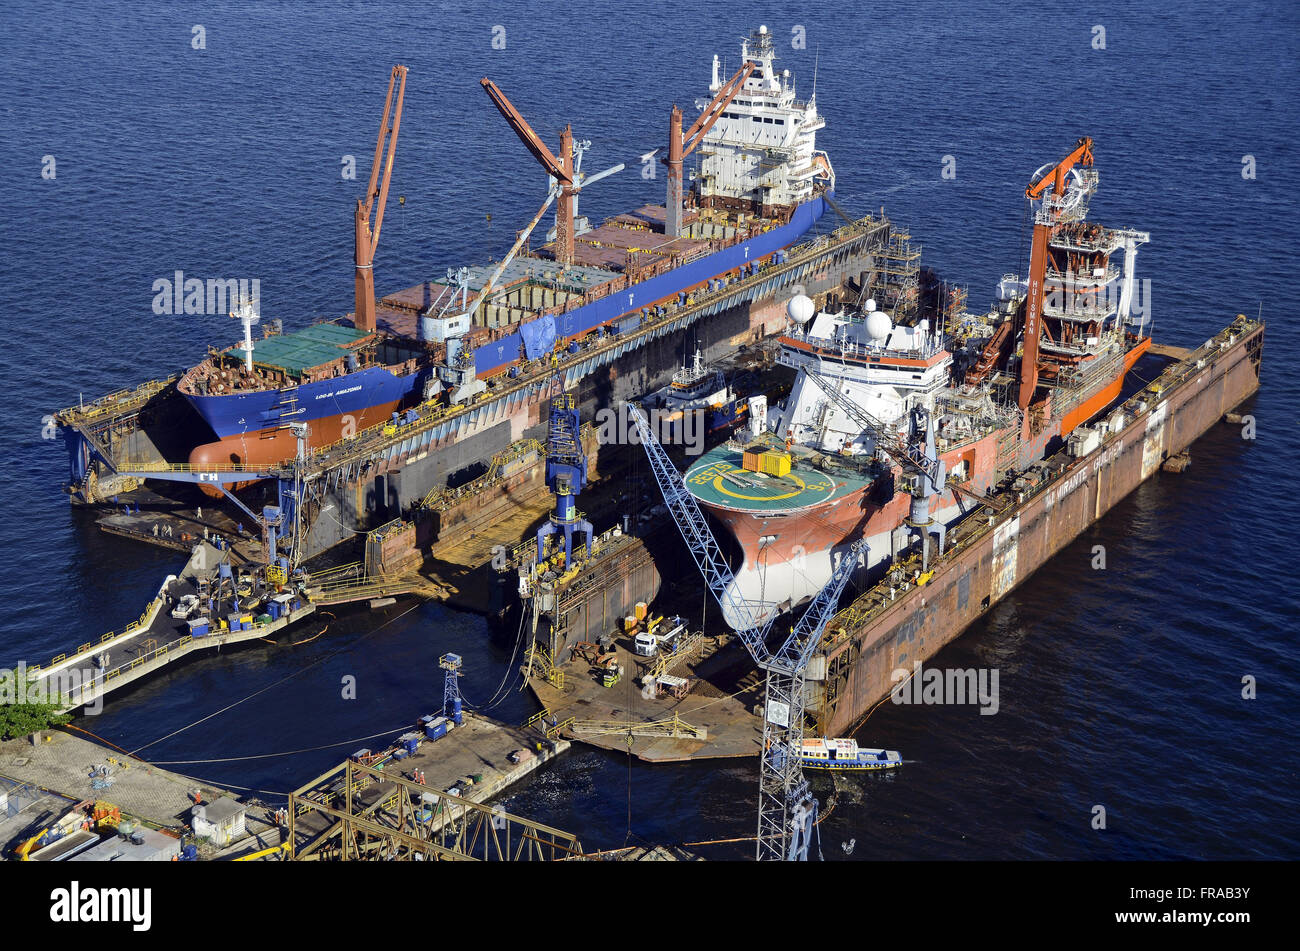 Vista aerea della nave mercantile e rimorchiatore agganciato per riparazioni in un cantiere navale - Baia Guanabara Foto Stock